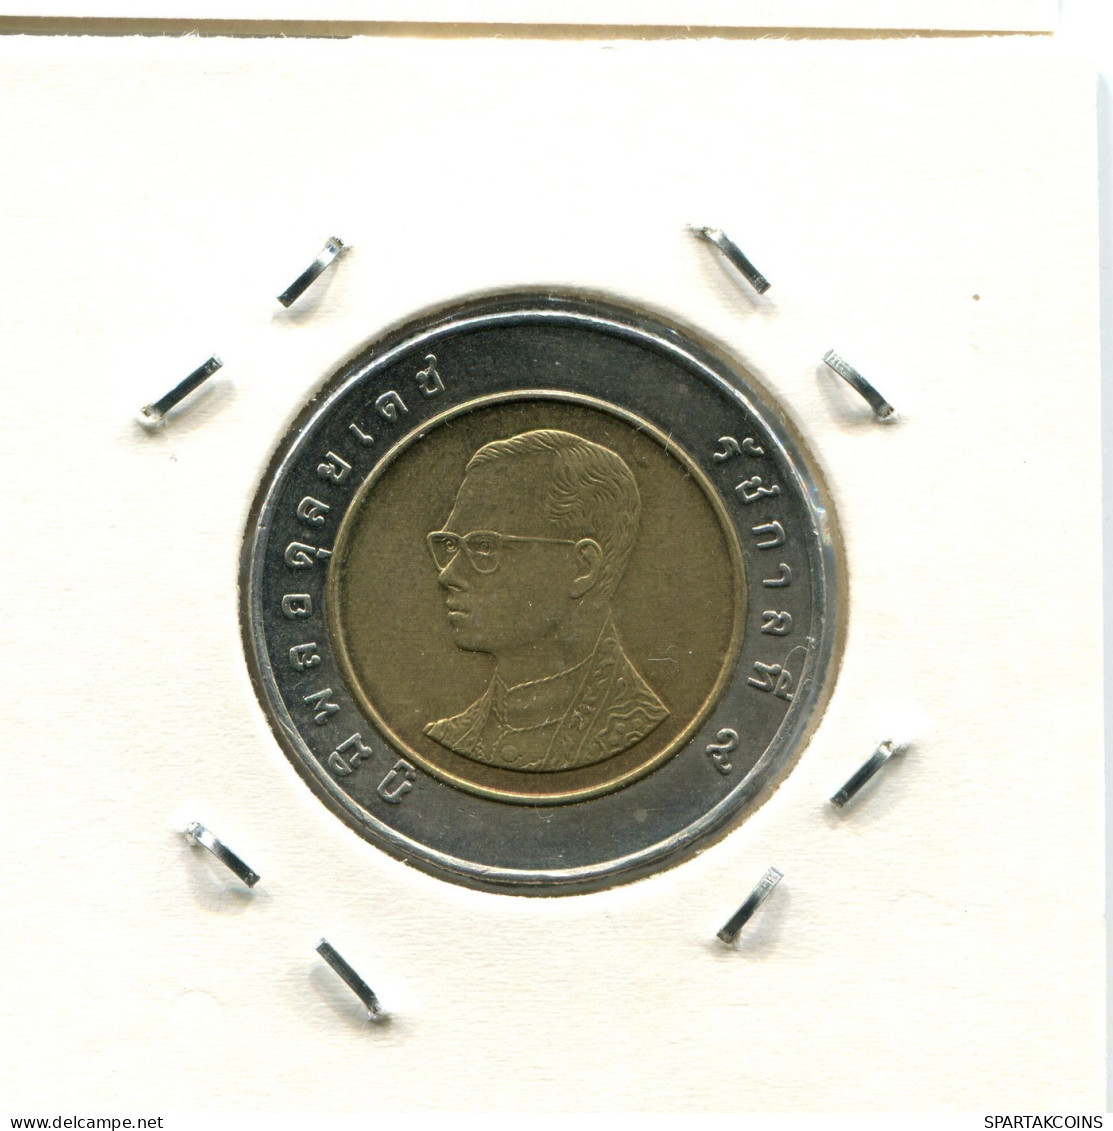 10 BAHT 2003 THAILAND RAMA IX BIMETALLIC Coin #AX273.U.A - Thailand